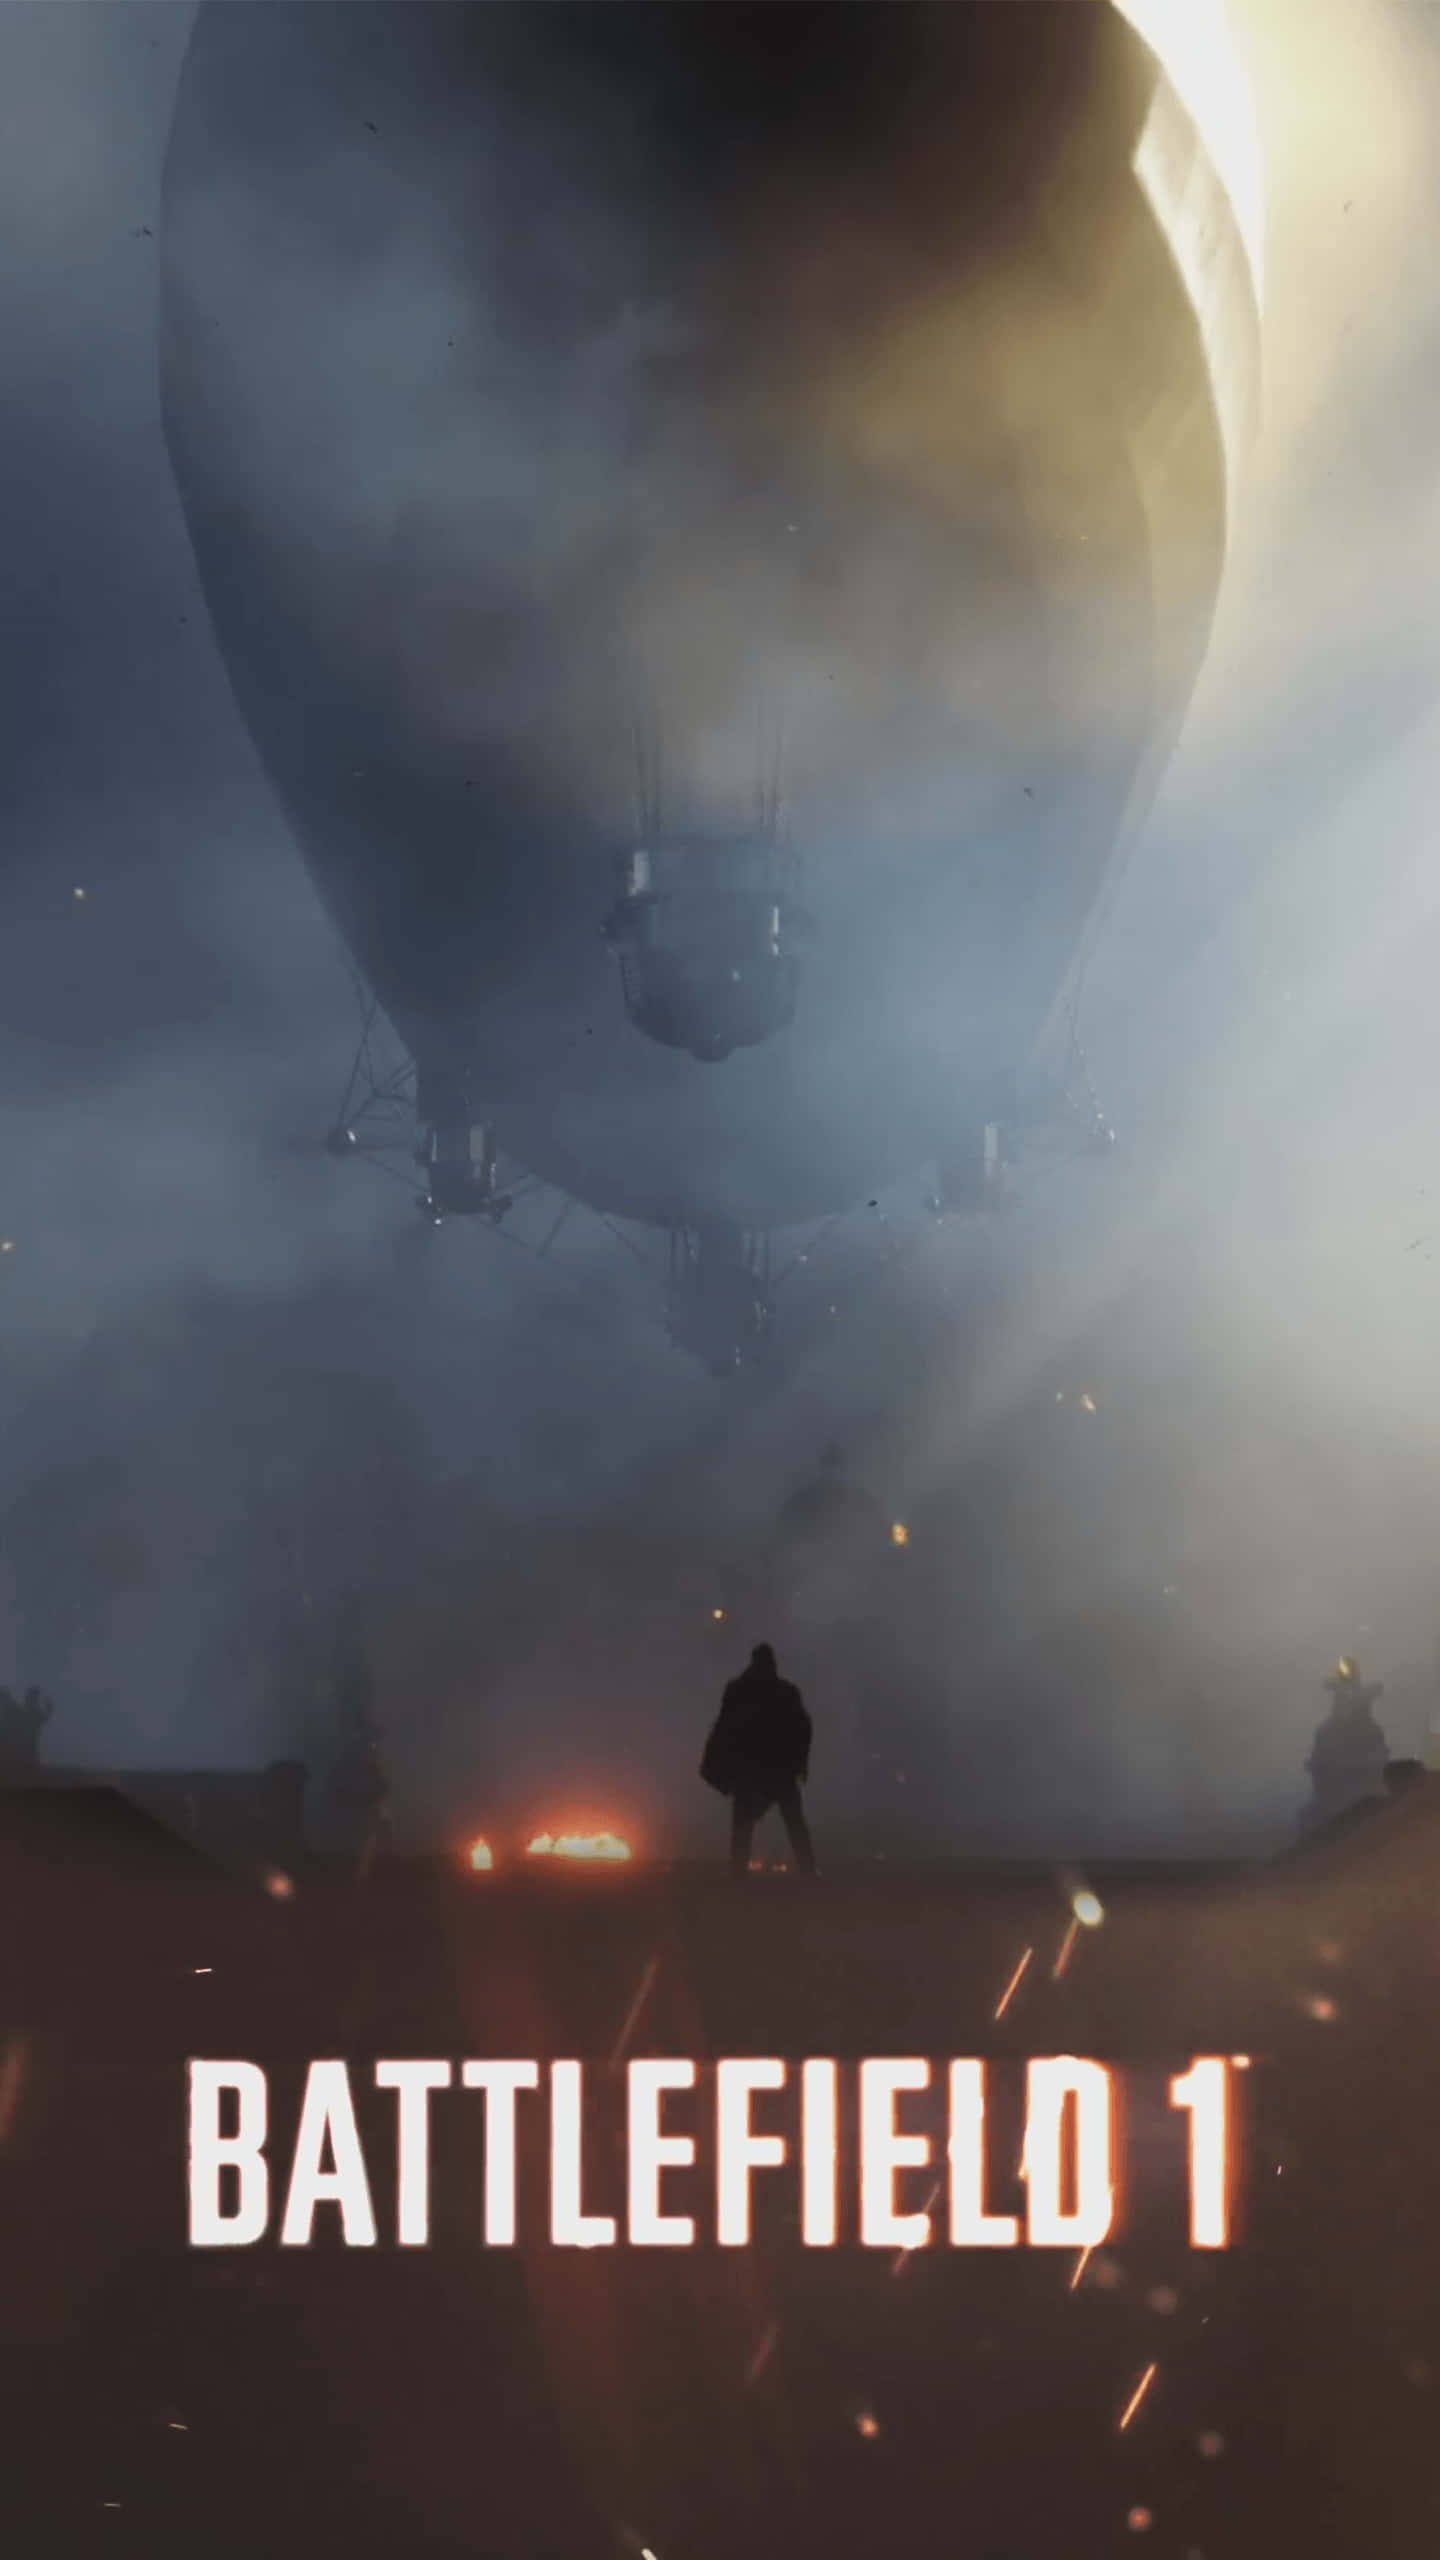 Pixel 3xl Battlefield 1 baggrund En soldat står over for en luftskib